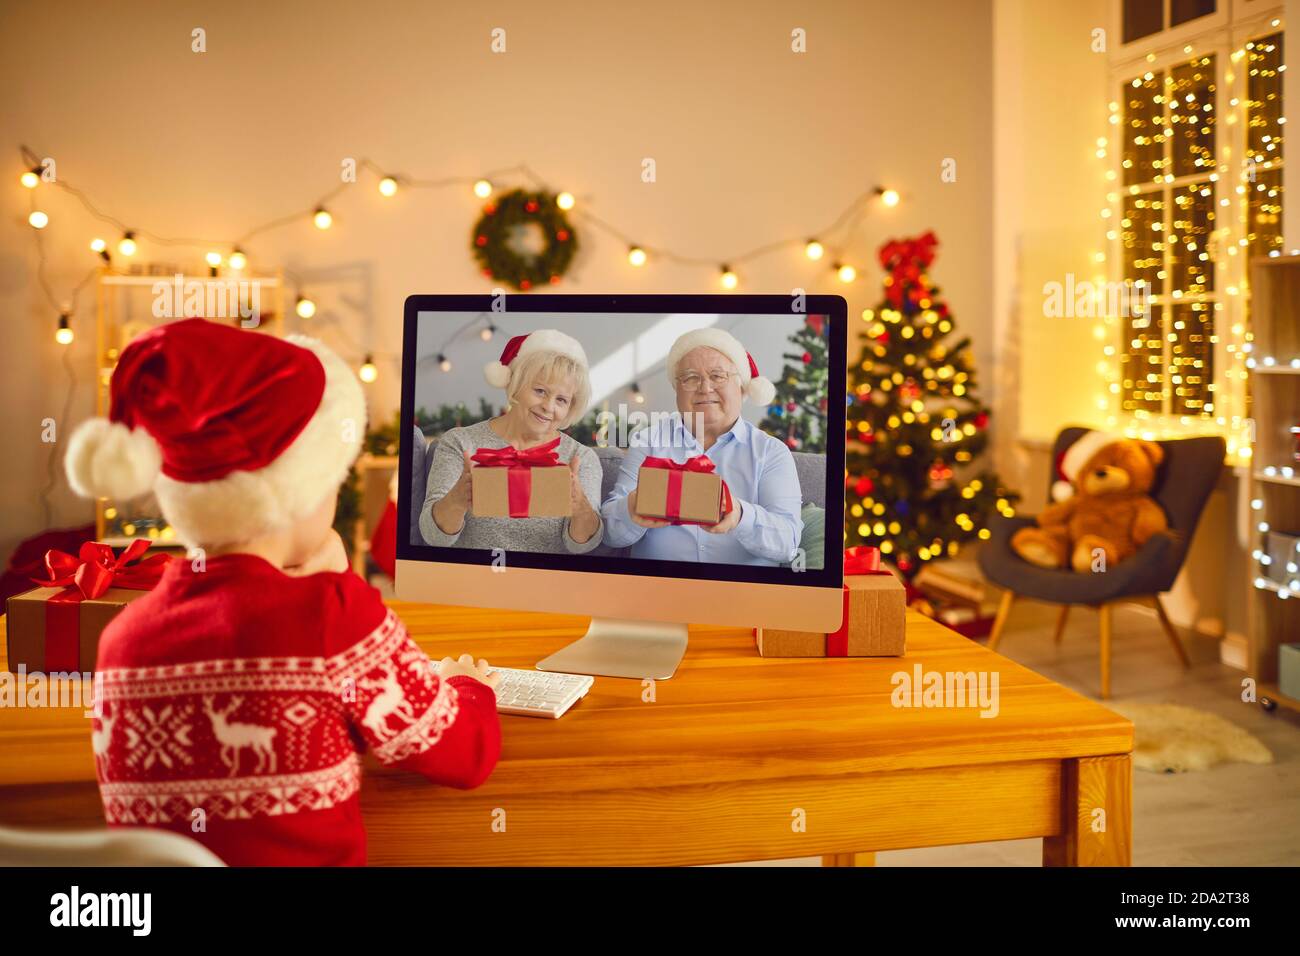 Kleiner Junge Video ruft Großeltern, die Weihnachtsgeschenke vorbereitet haben Für ihn Stockfoto